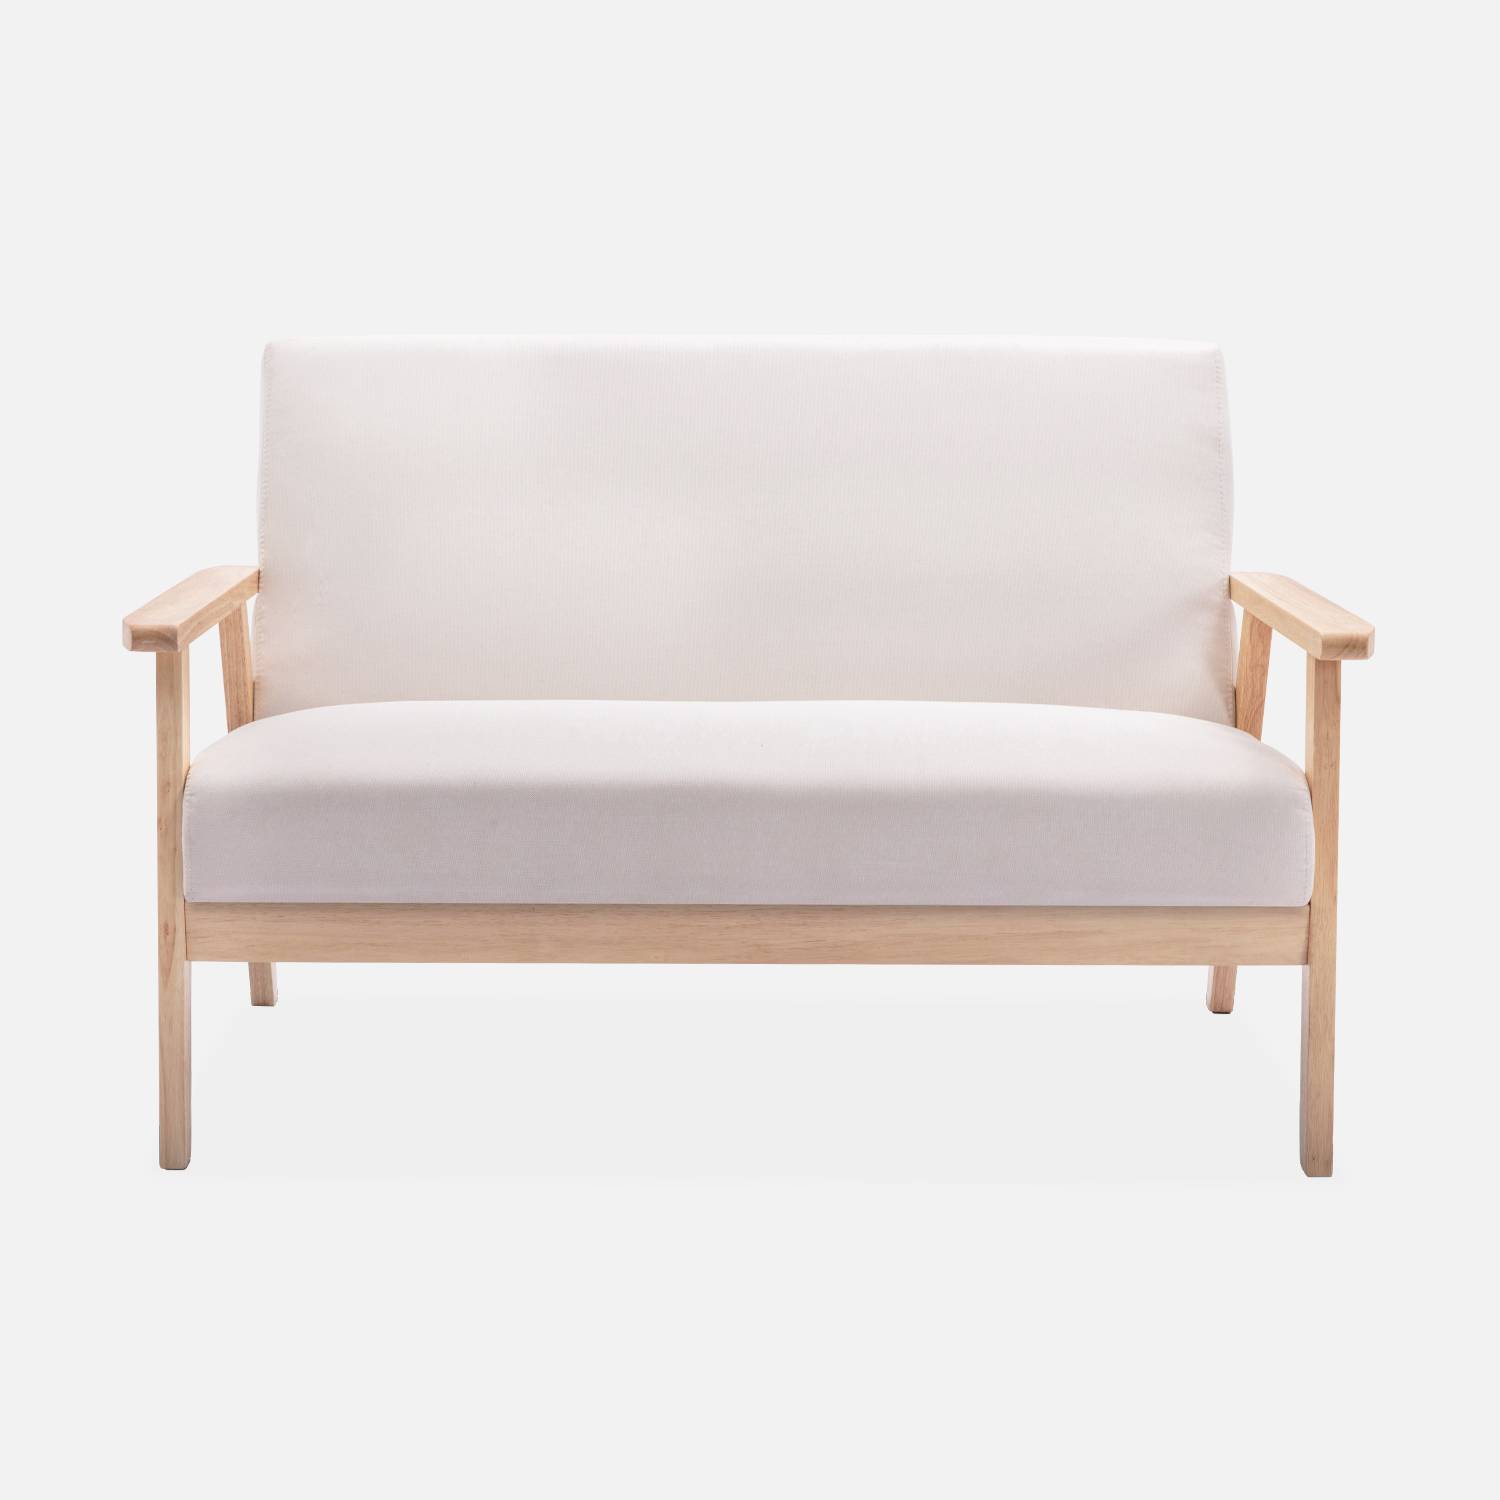 Panca per divano in legno e tessuto crema, Isak, L 114 x P 69,5 x H 73 cm Photo4